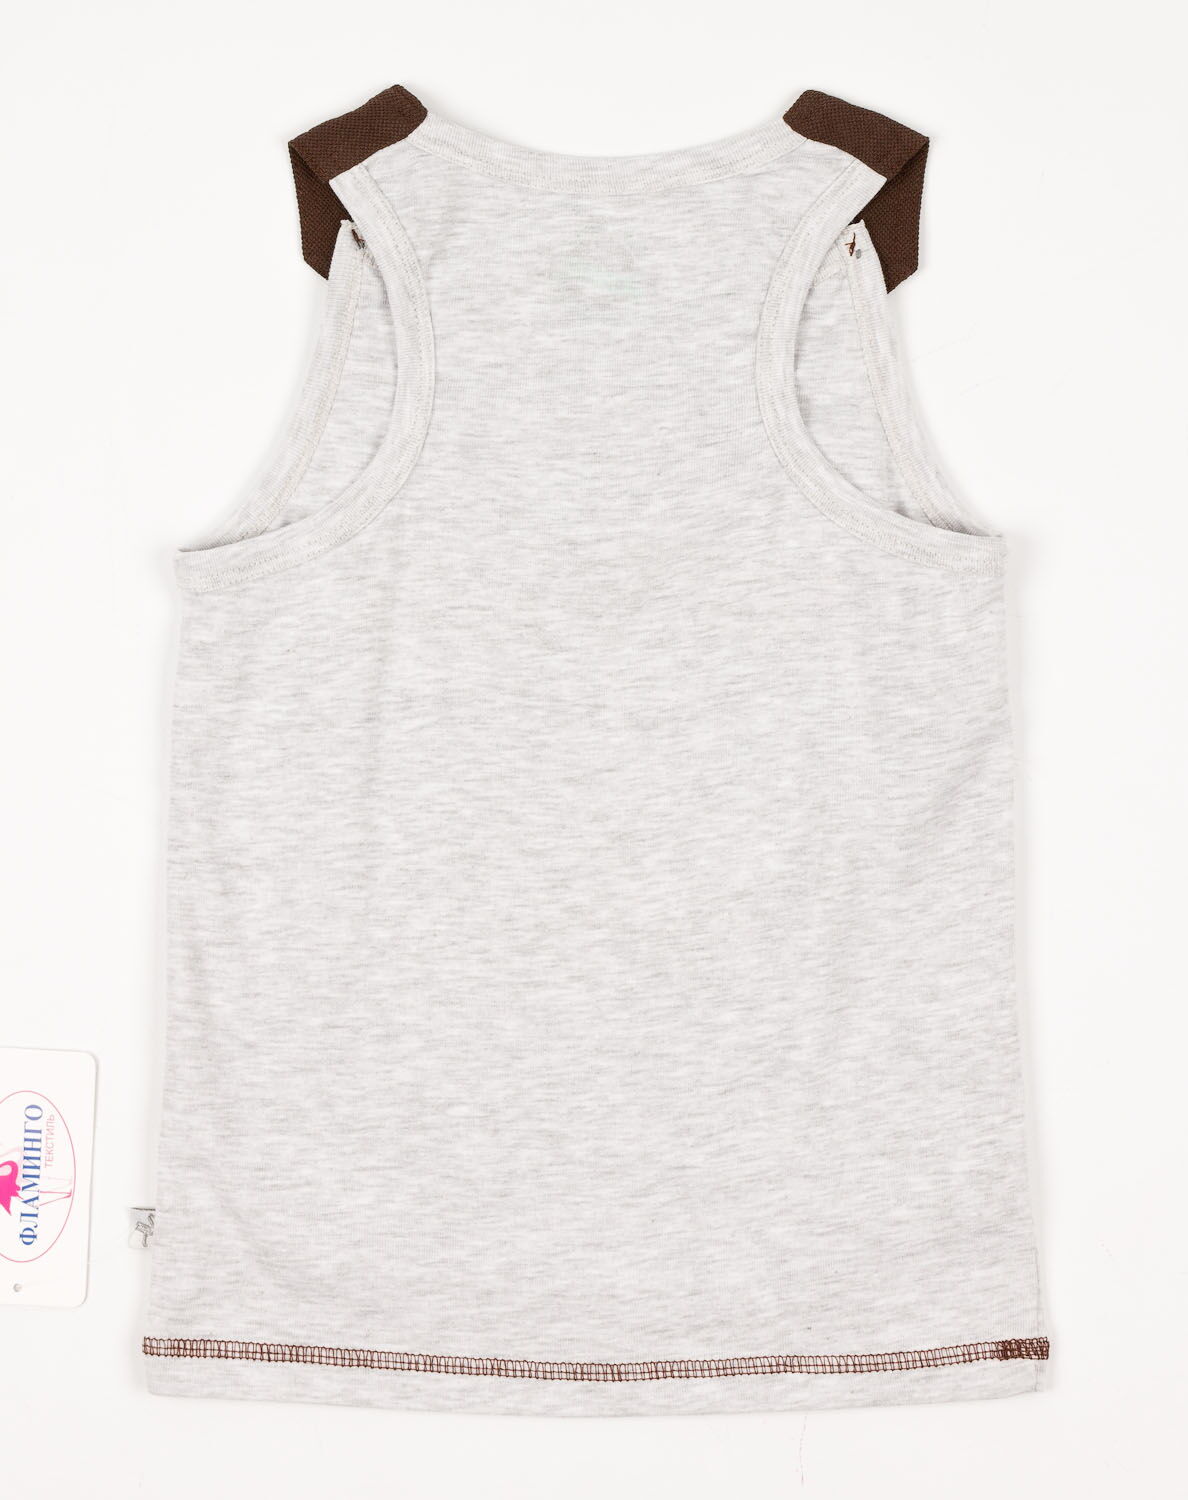 Комплект для мальчика (майка+шорты) Фламинго коричневый 911-1303 - фотография